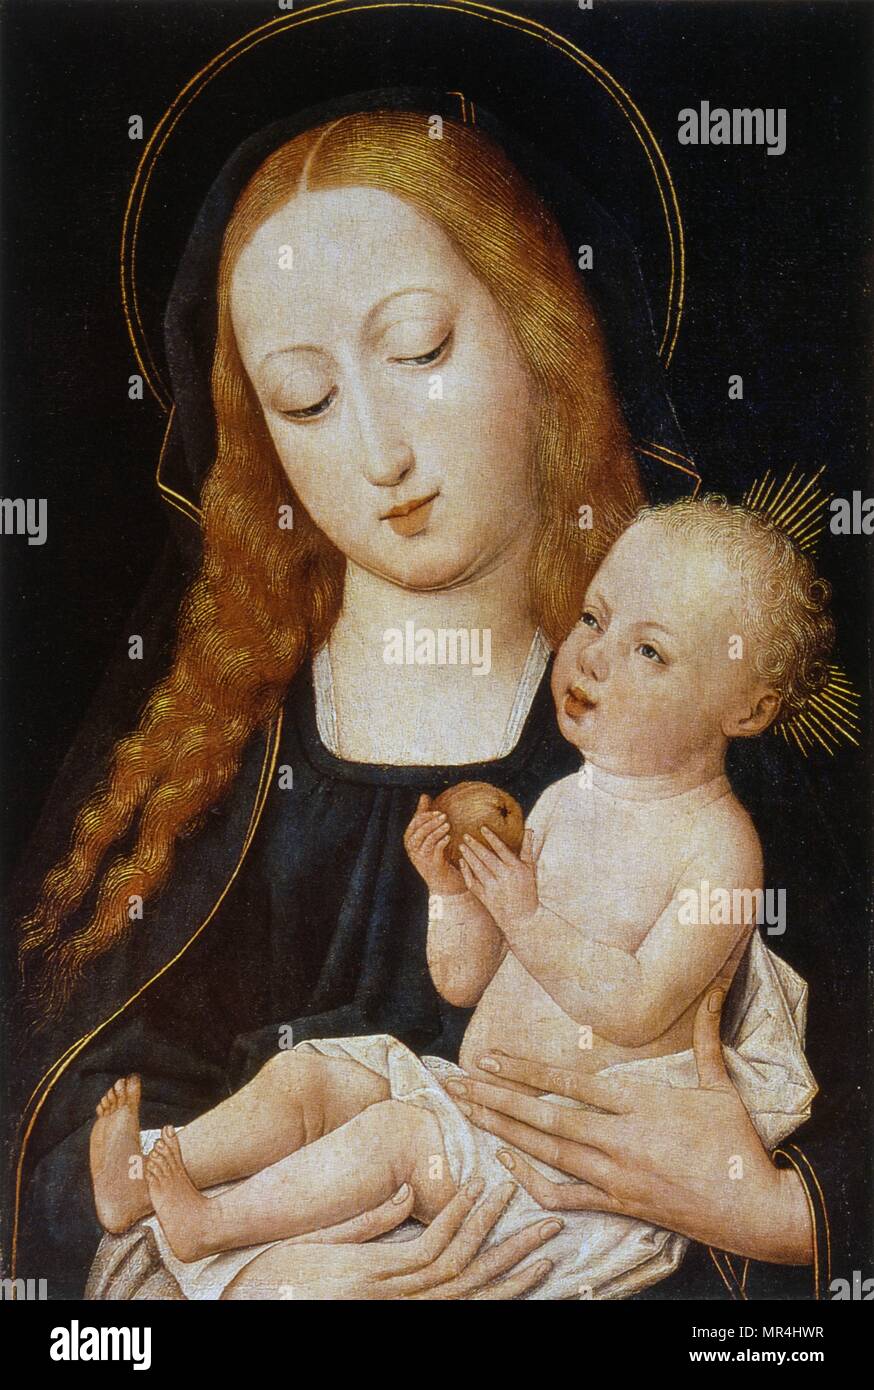 15e siècle portrait de la Vierge Marie et l'enfant Jésus. Musée de l'Ermitage, Saint-Pétersbourg, Russie Banque D'Images